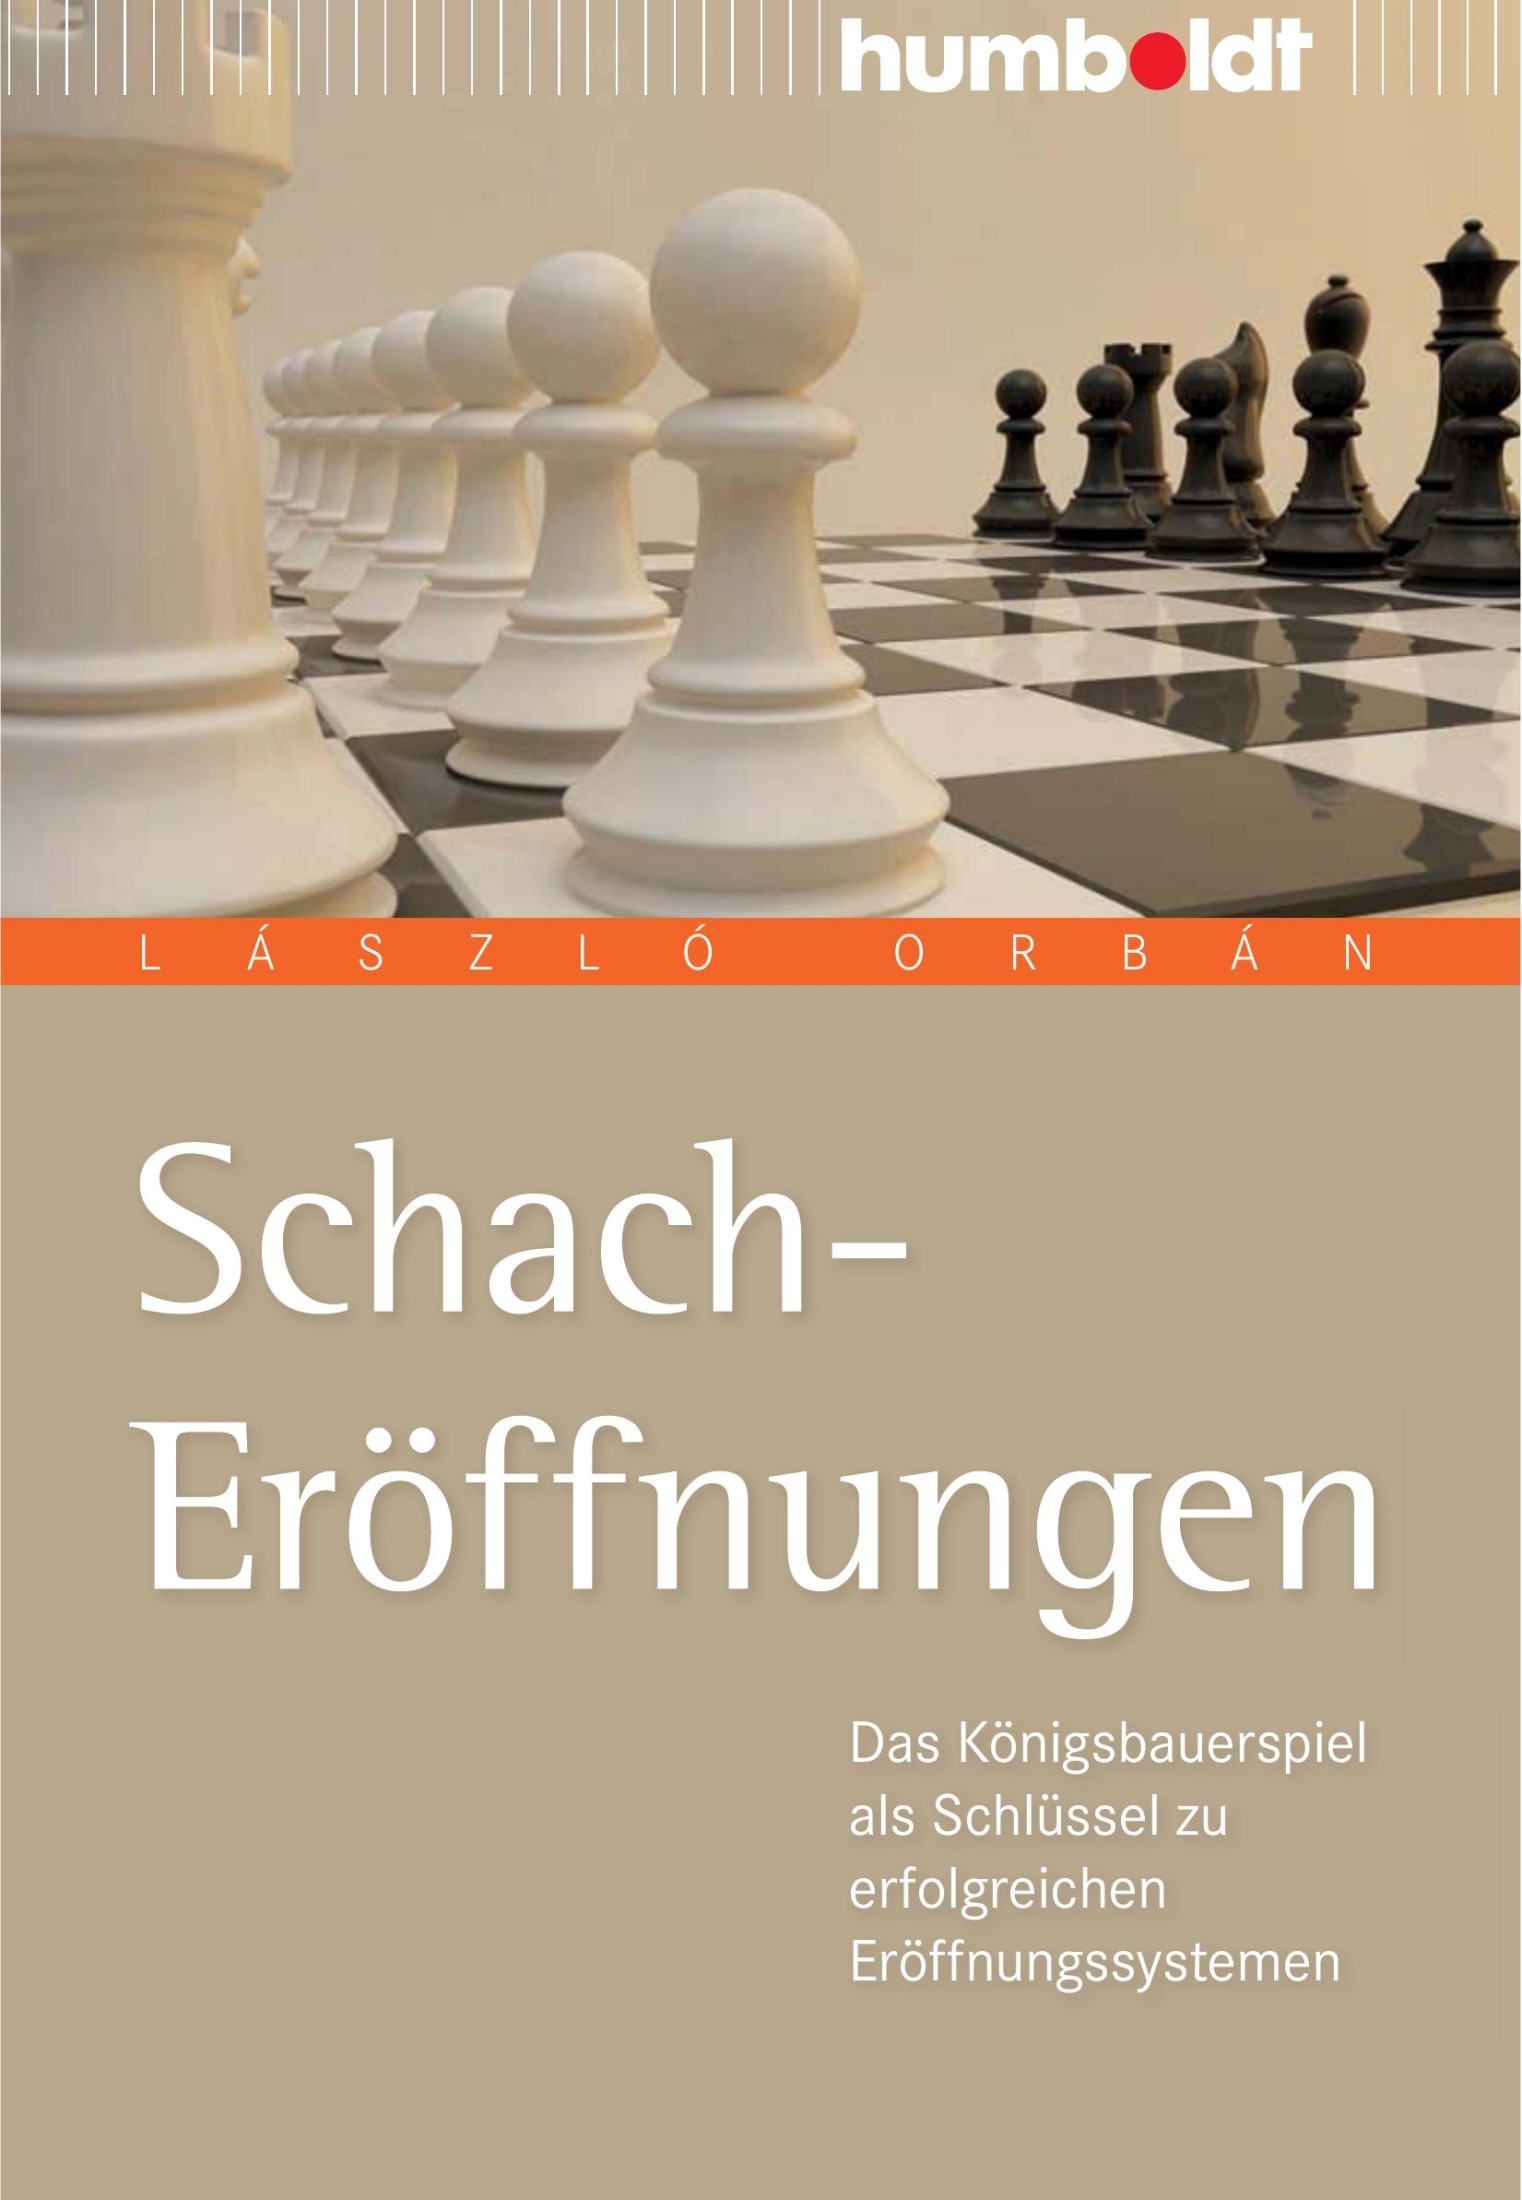 Schach-Eröffnungen: das Königsbauerspiel als Schlüssel zu erfolgreichen Eröffnungssystemen